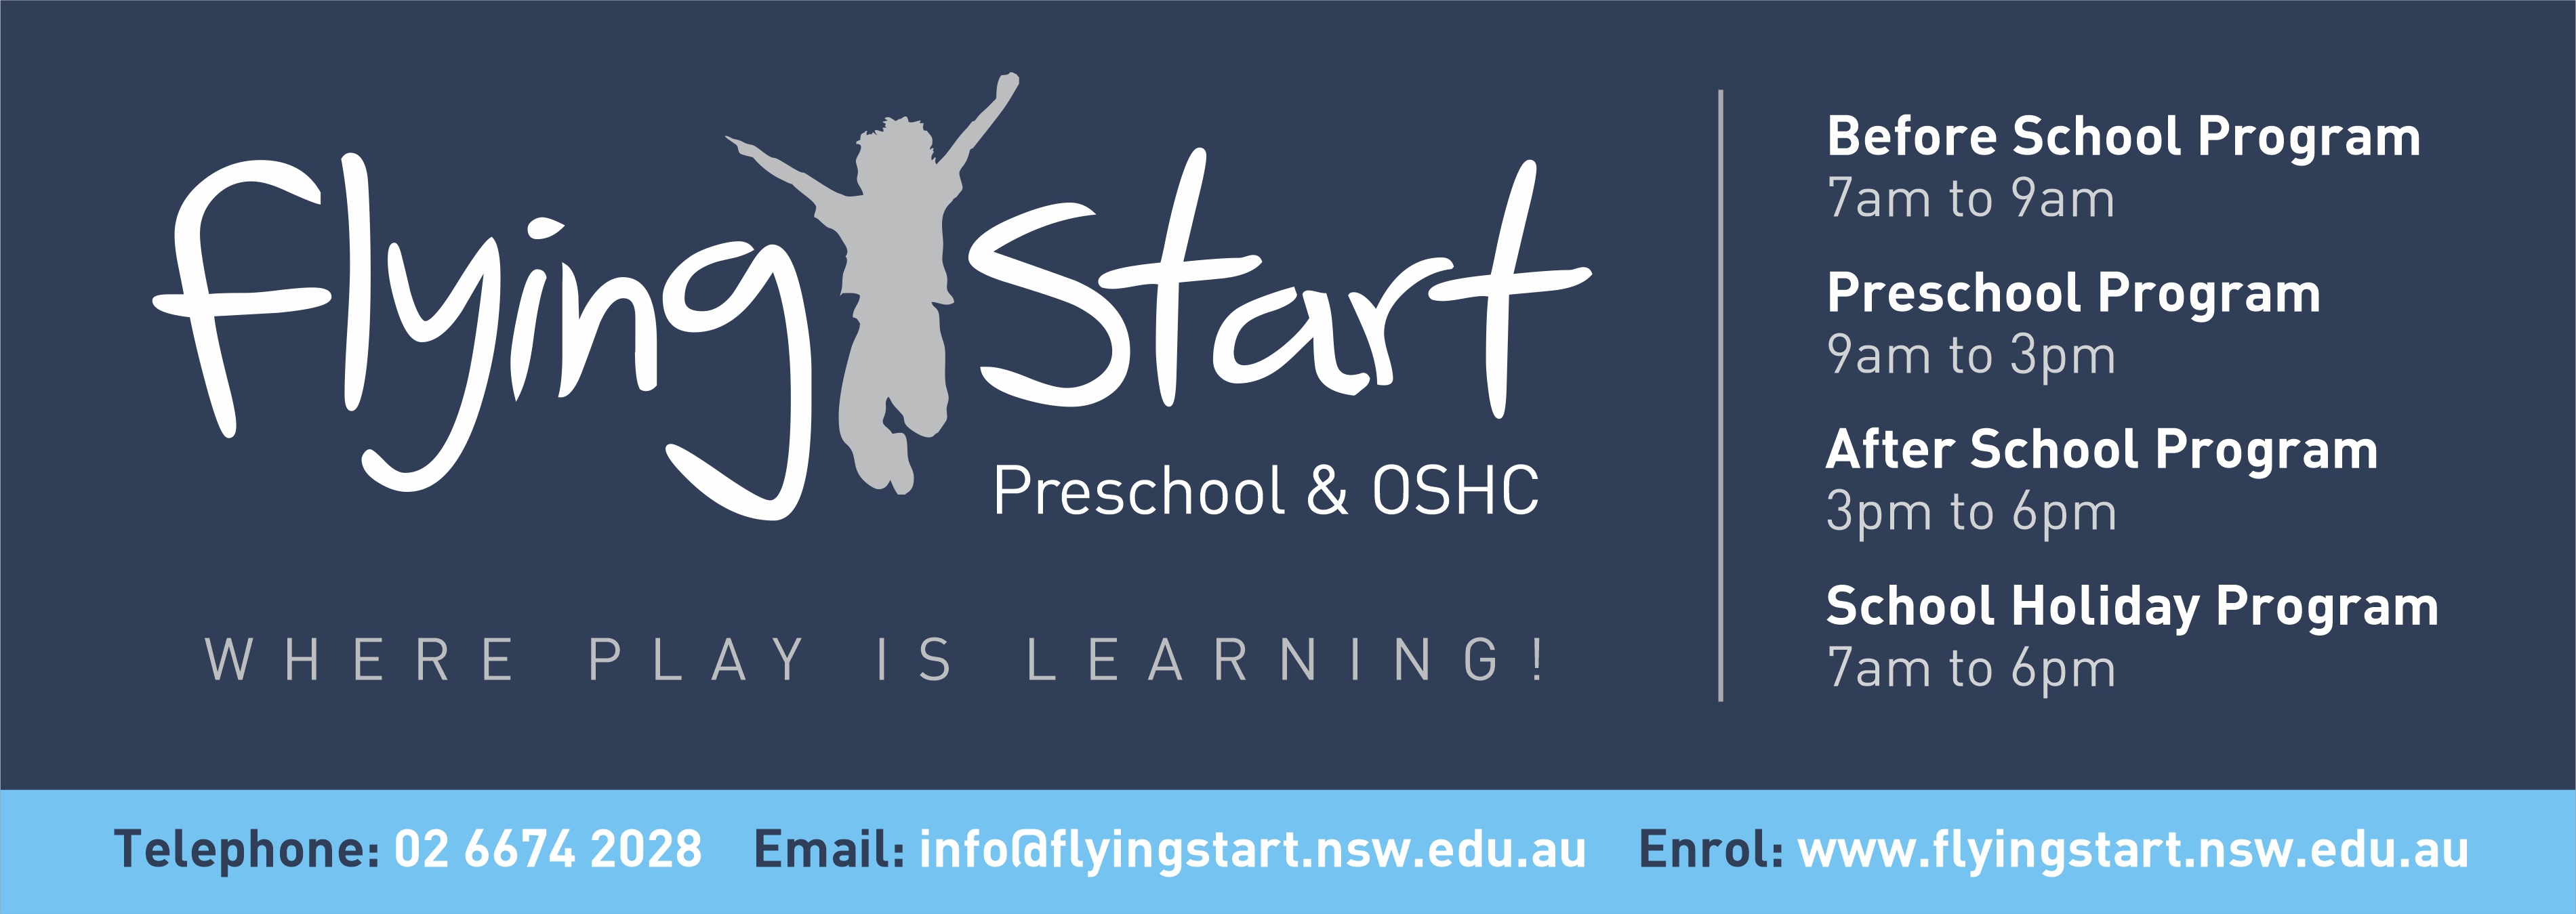 Flying Start Preschool & OSHC